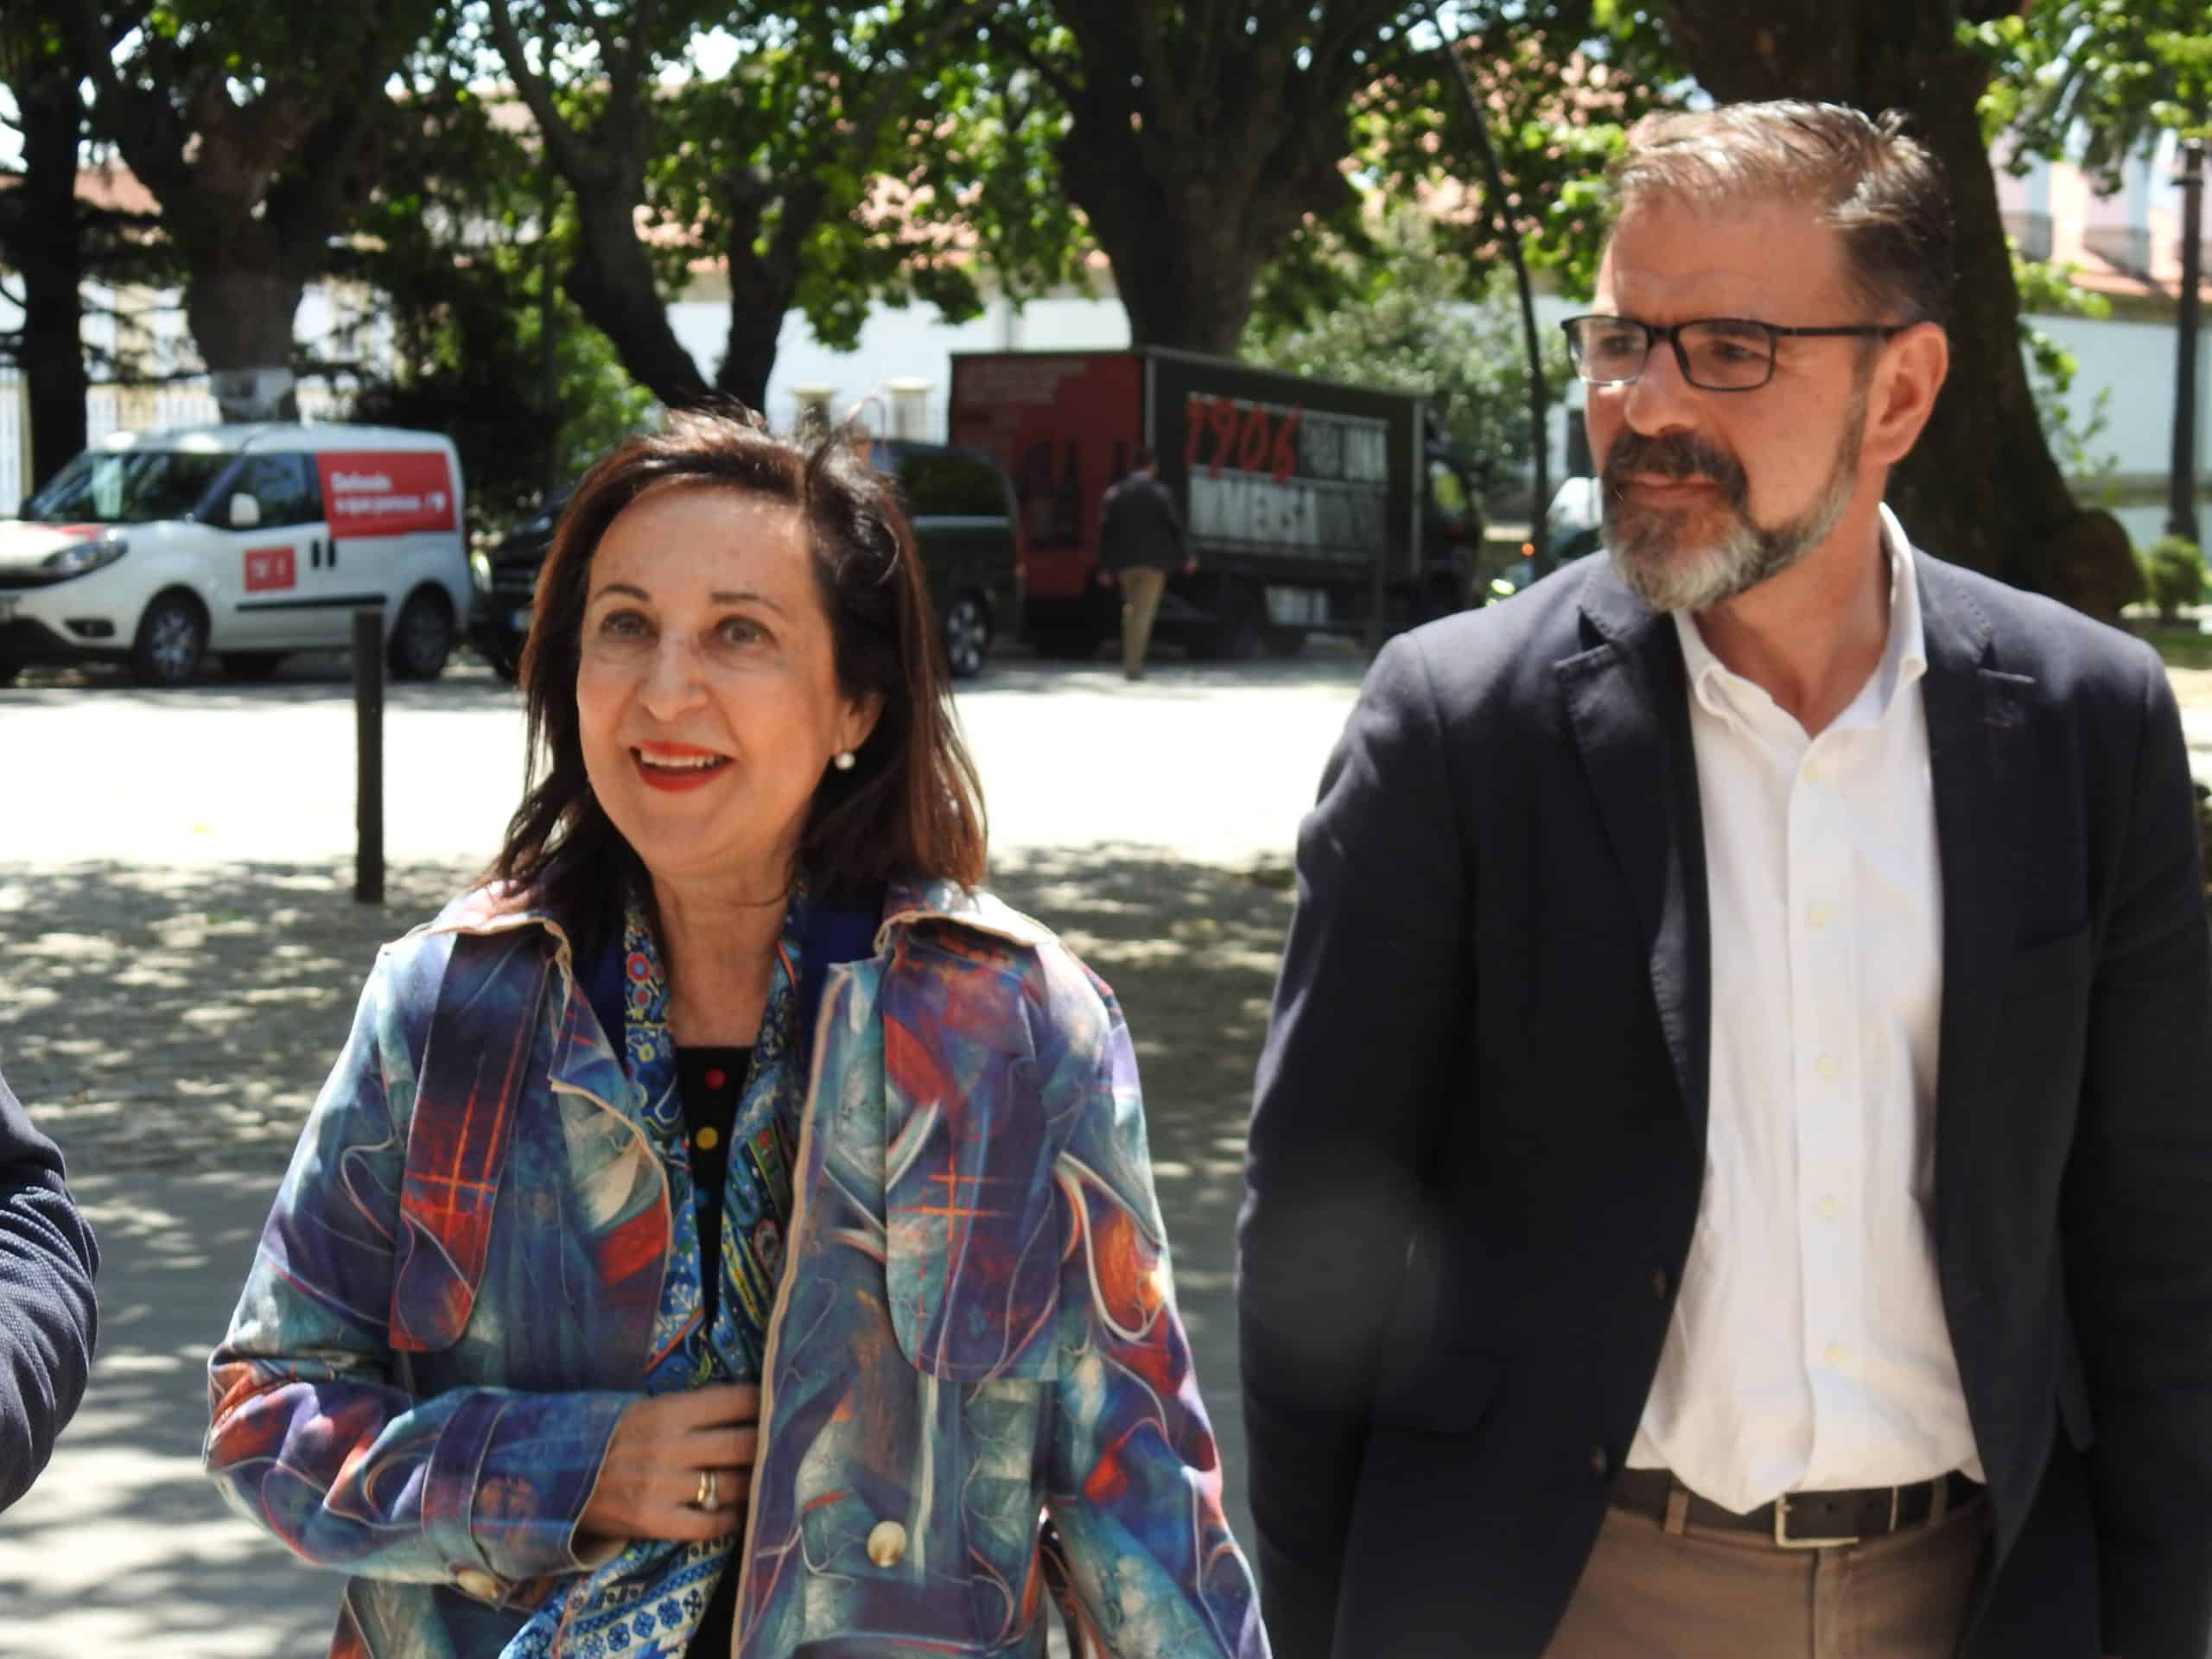 La ministra de Defensa visitó la ciudad y recorrió la muralla del Arsenal militar de Ferrol junto al actual alcalde y candidato del PSOE